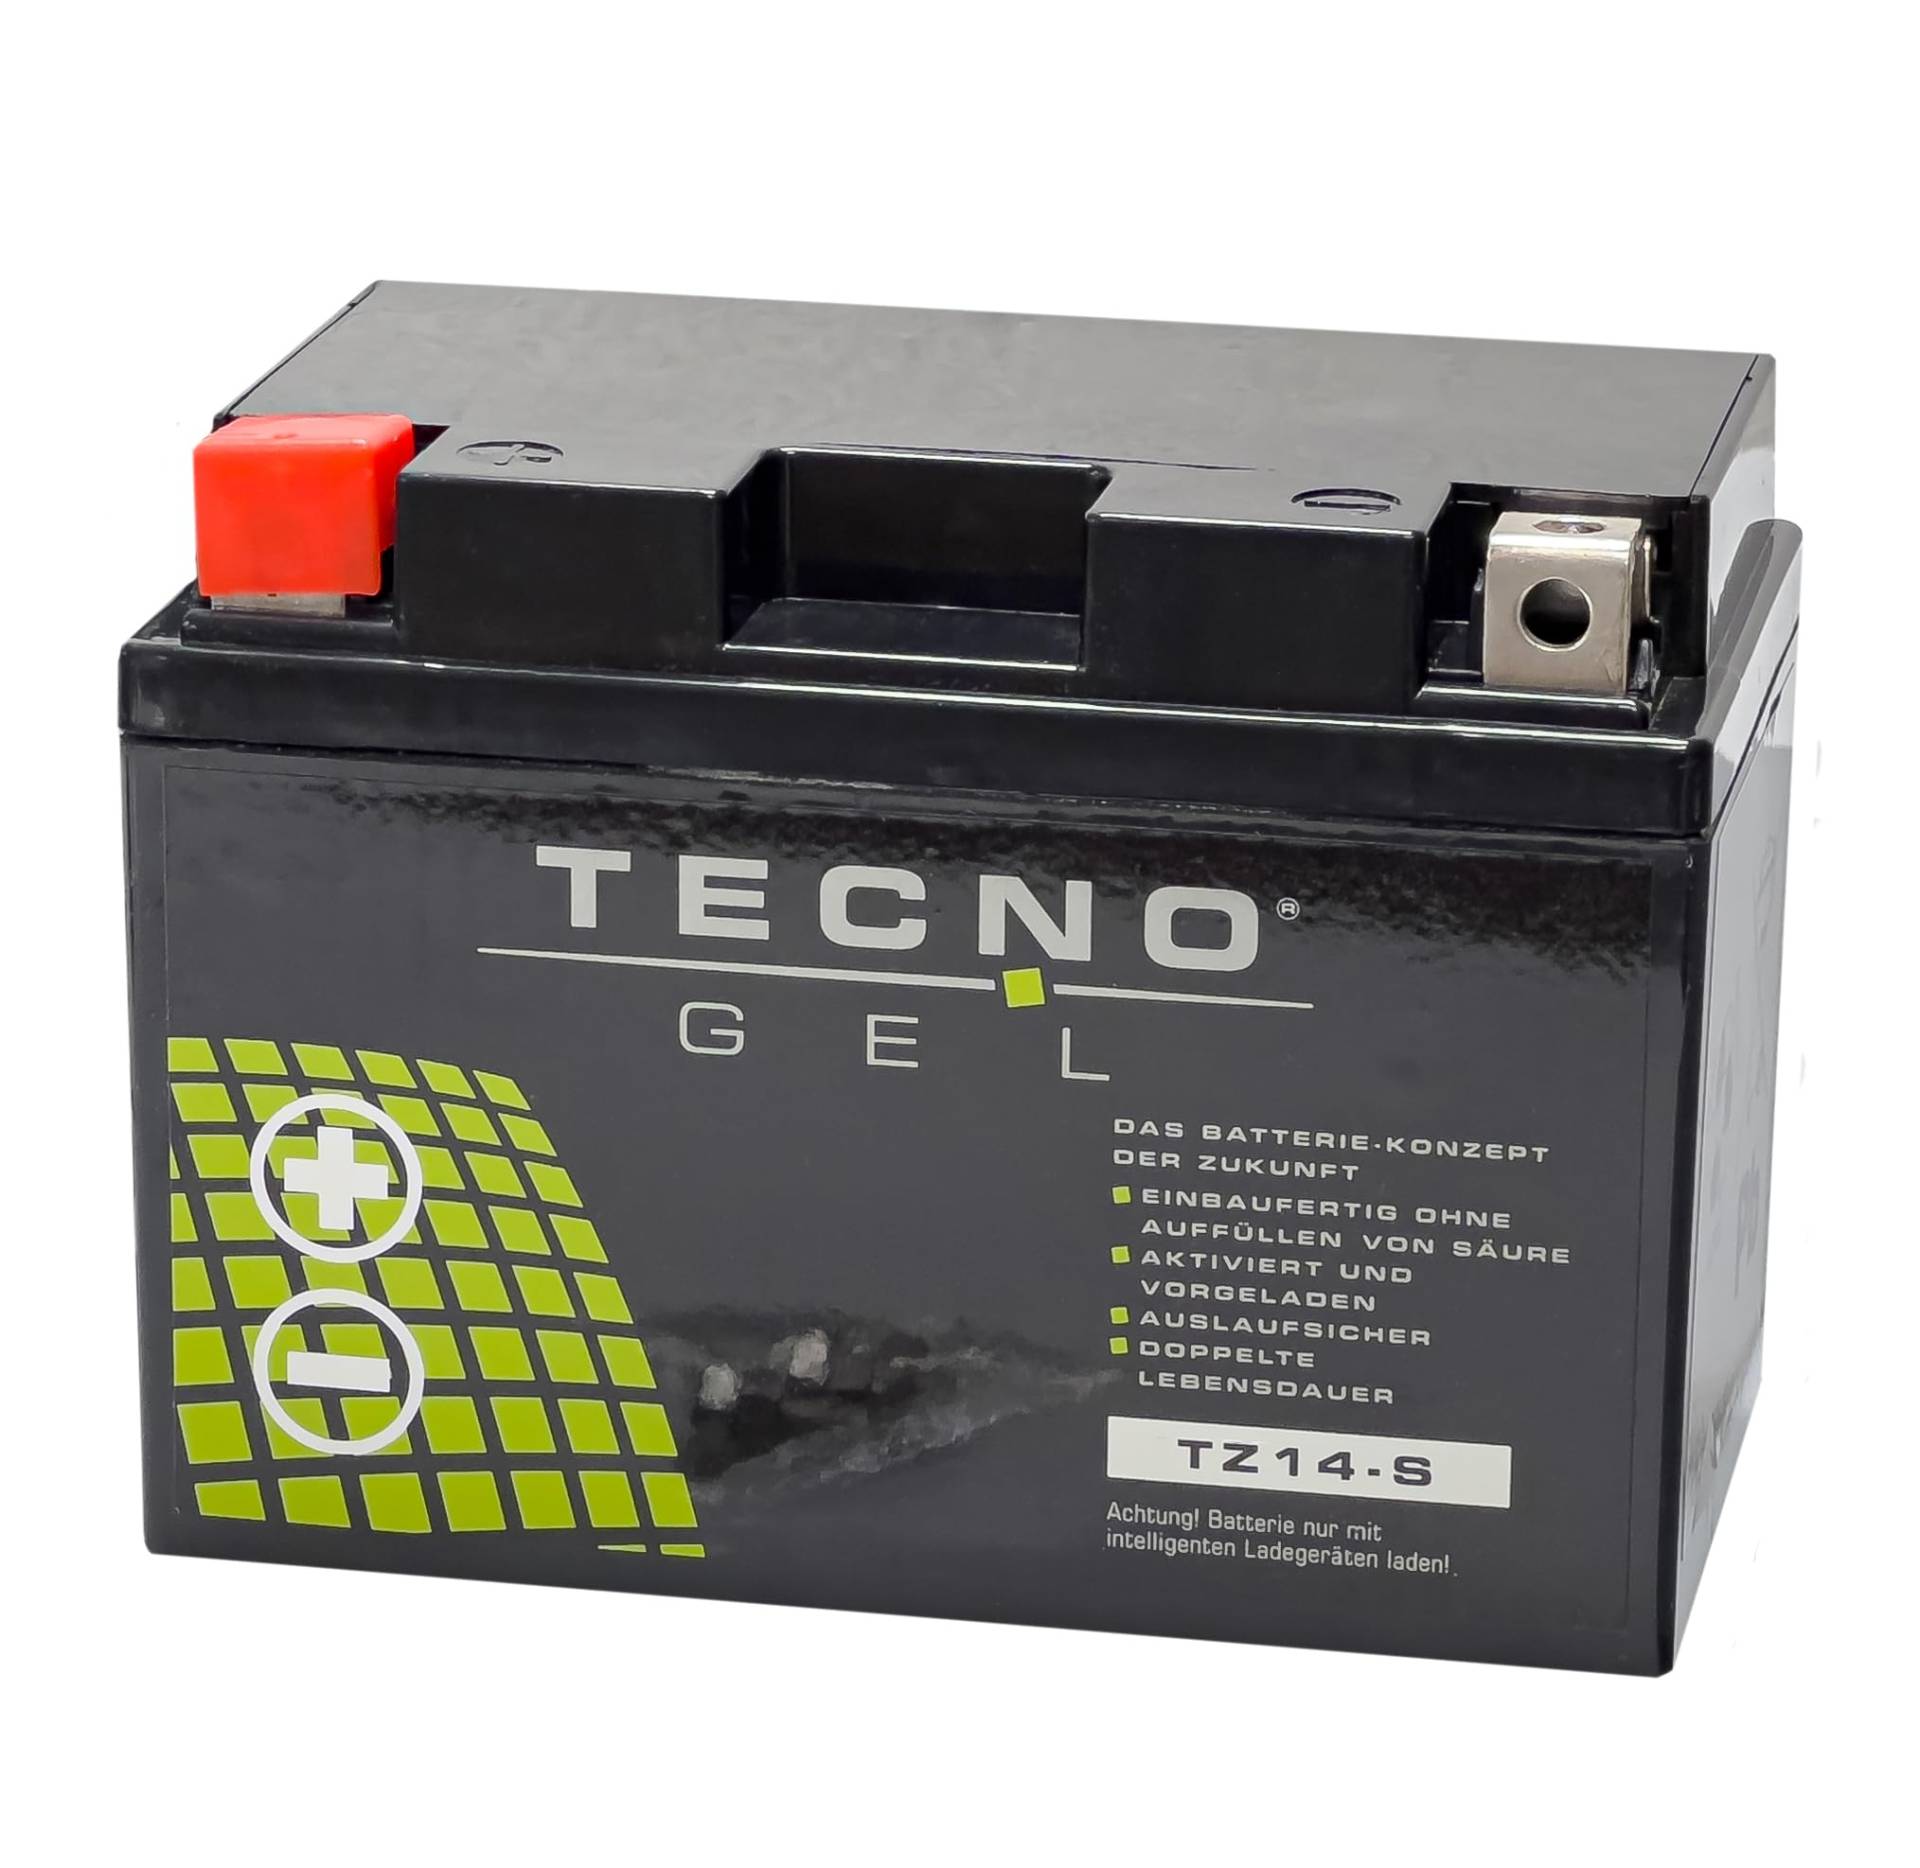 TECNO-GEL Motorrad-Batterie für YTZ14-S für HONDA VT 750 alle 2000-2016, 12V Gel-Batterie 11,3Ah (DIN 51101), 151x87x110 mm von Wirth-Federn